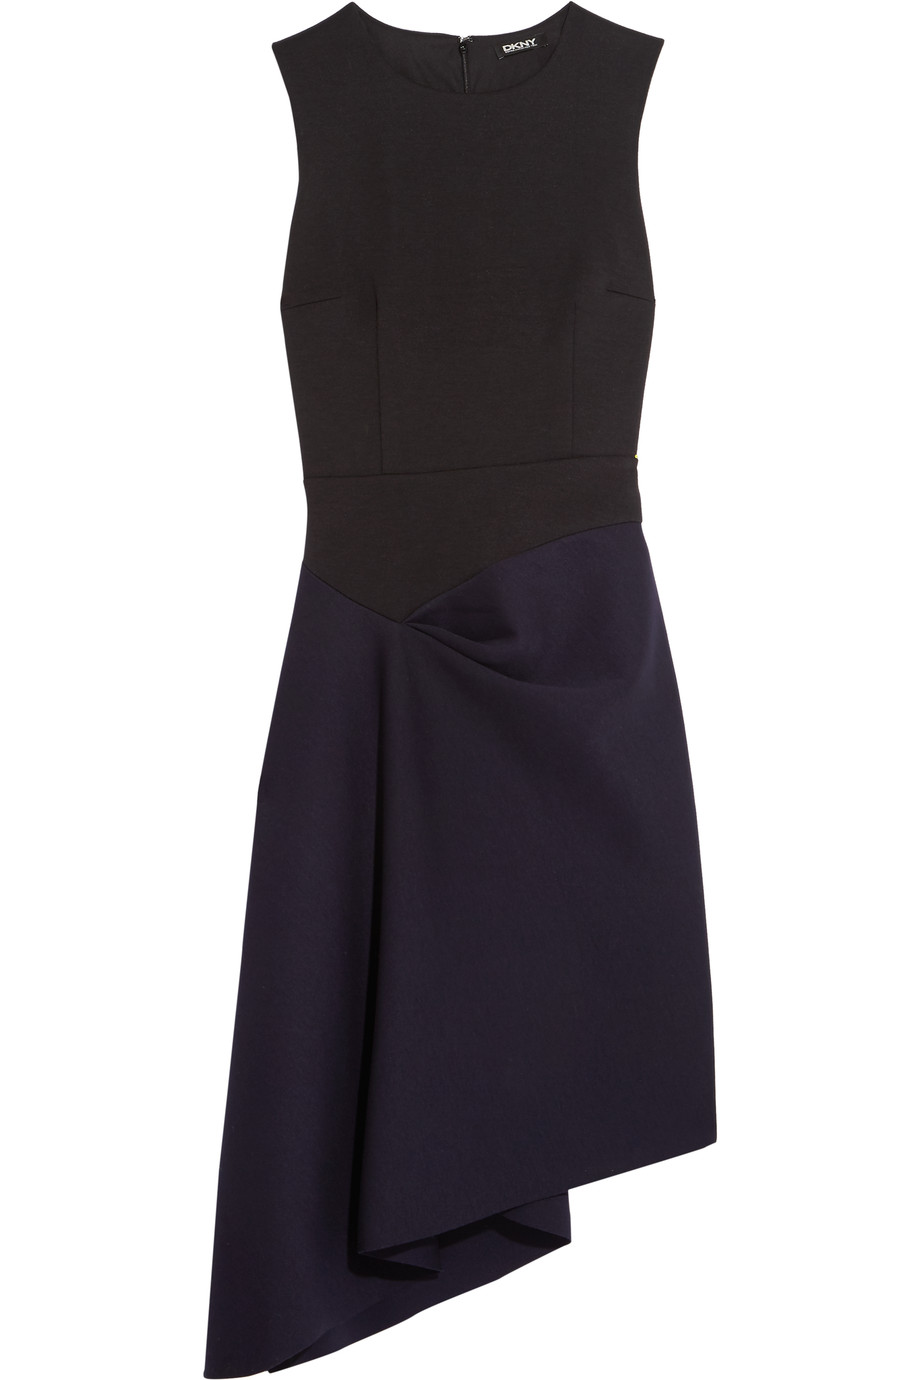 Dkny Color-block Asymmetric Jersey Dress | ModeSens